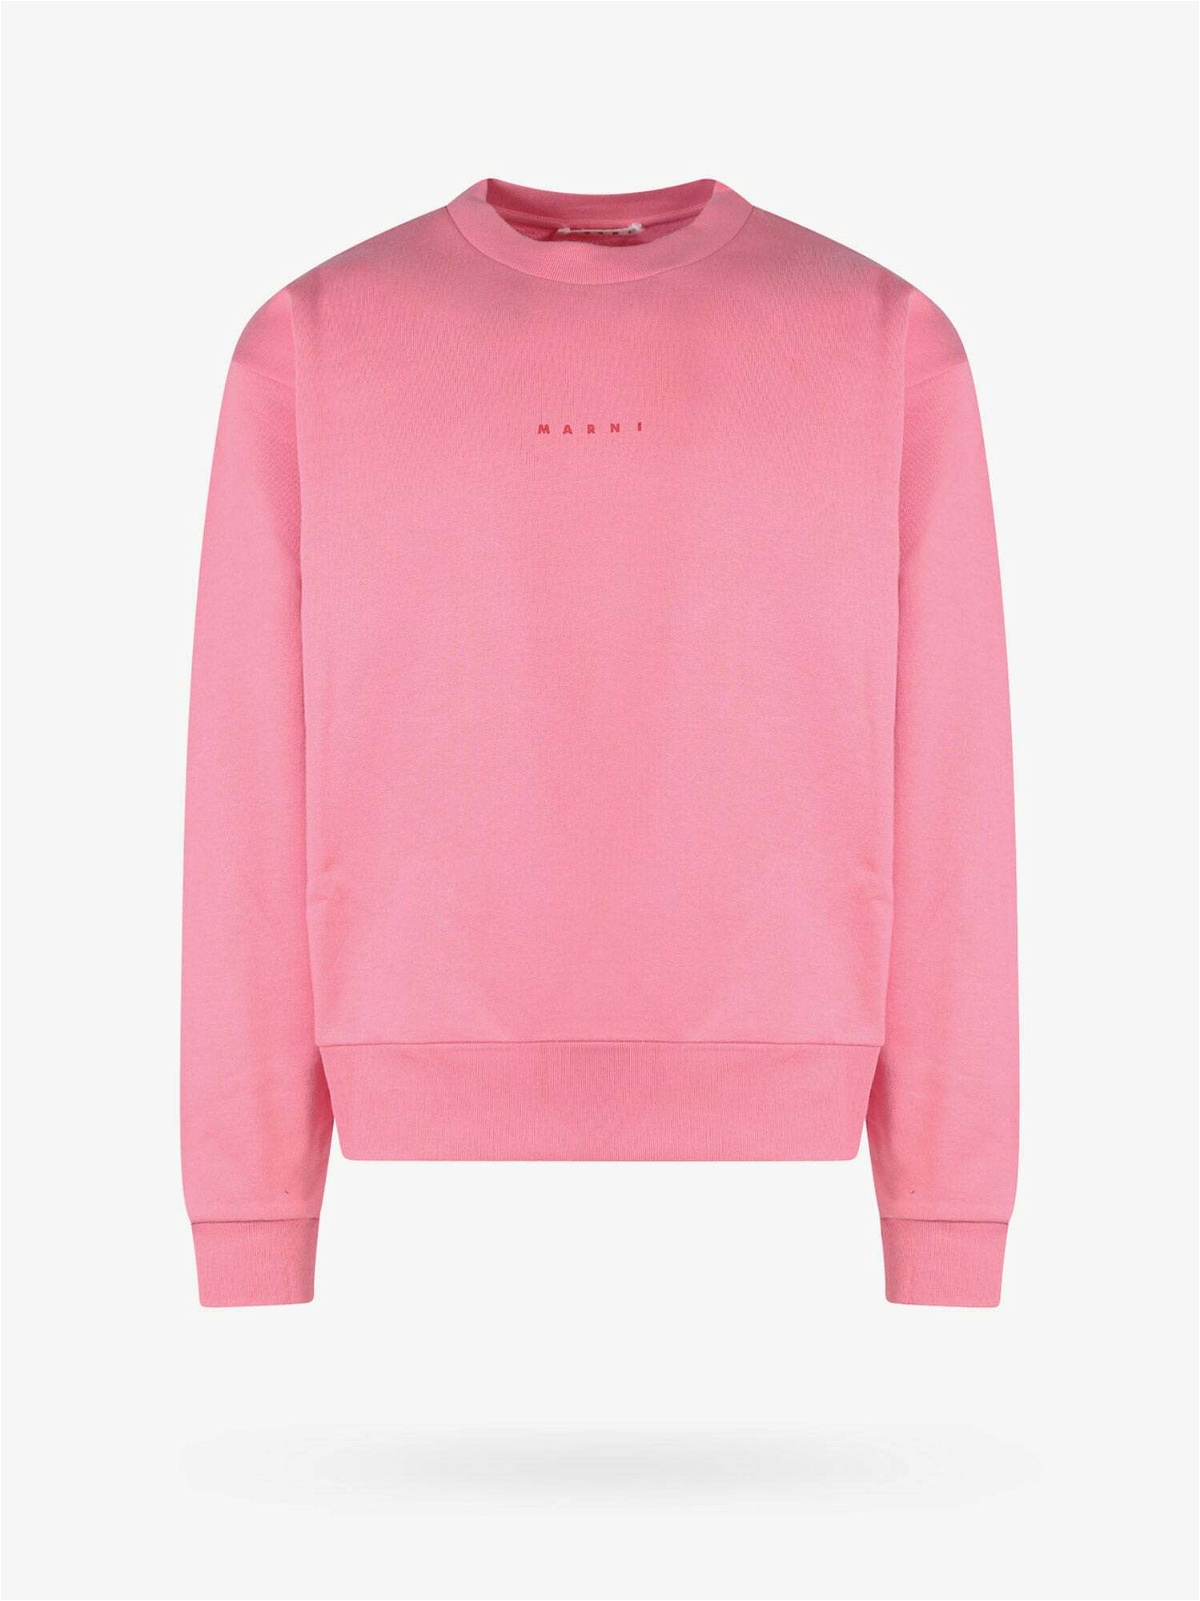 Marni Sweatshirt Pink Mens Marni